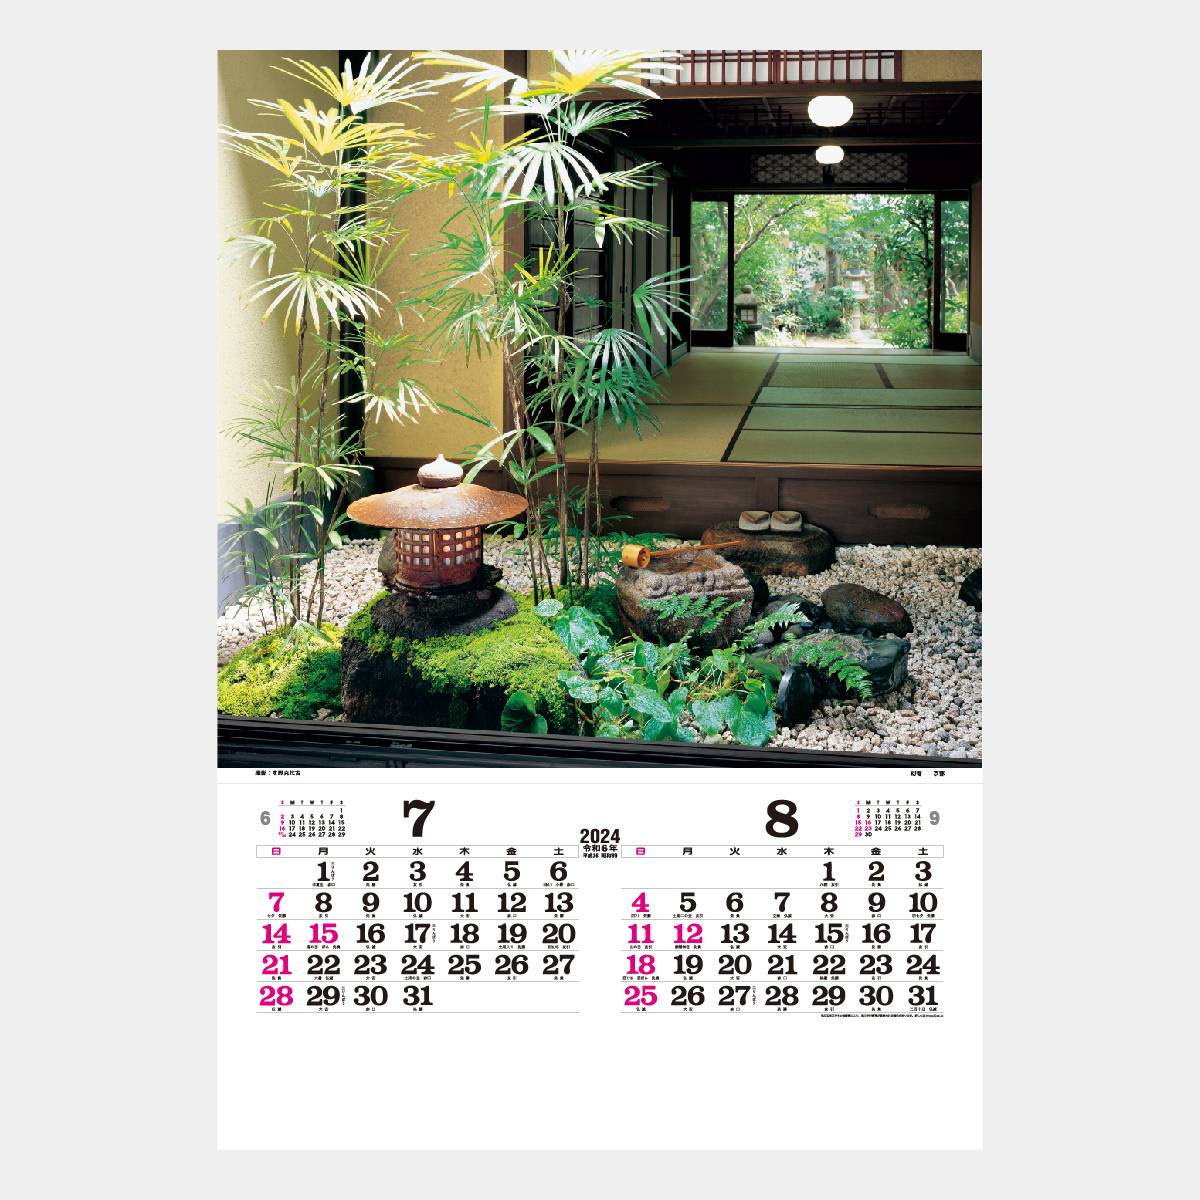 お見舞い 2023 壁掛け フィルム カレンダー 静寂の庭 庭園 風景 京都